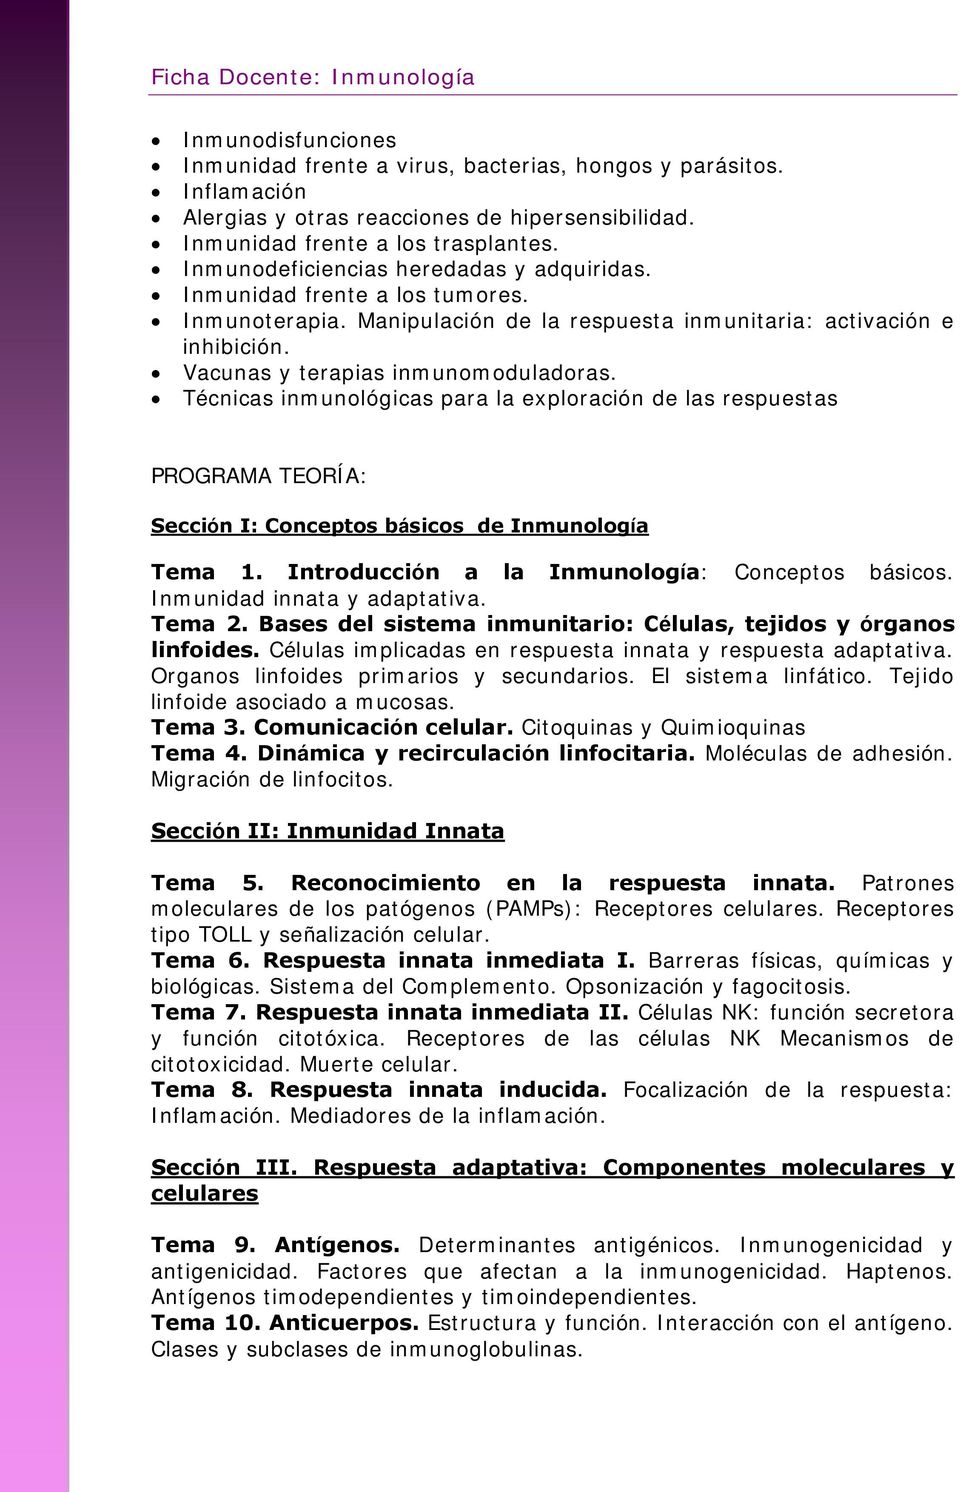 Técnicas inmunológicas para la exploración de las respuestas PROGRAMA TEORÍA: Sección I: Conceptos básicos de Inmunología Tema 1. Introducción a la Inmunología: Conceptos básicos.